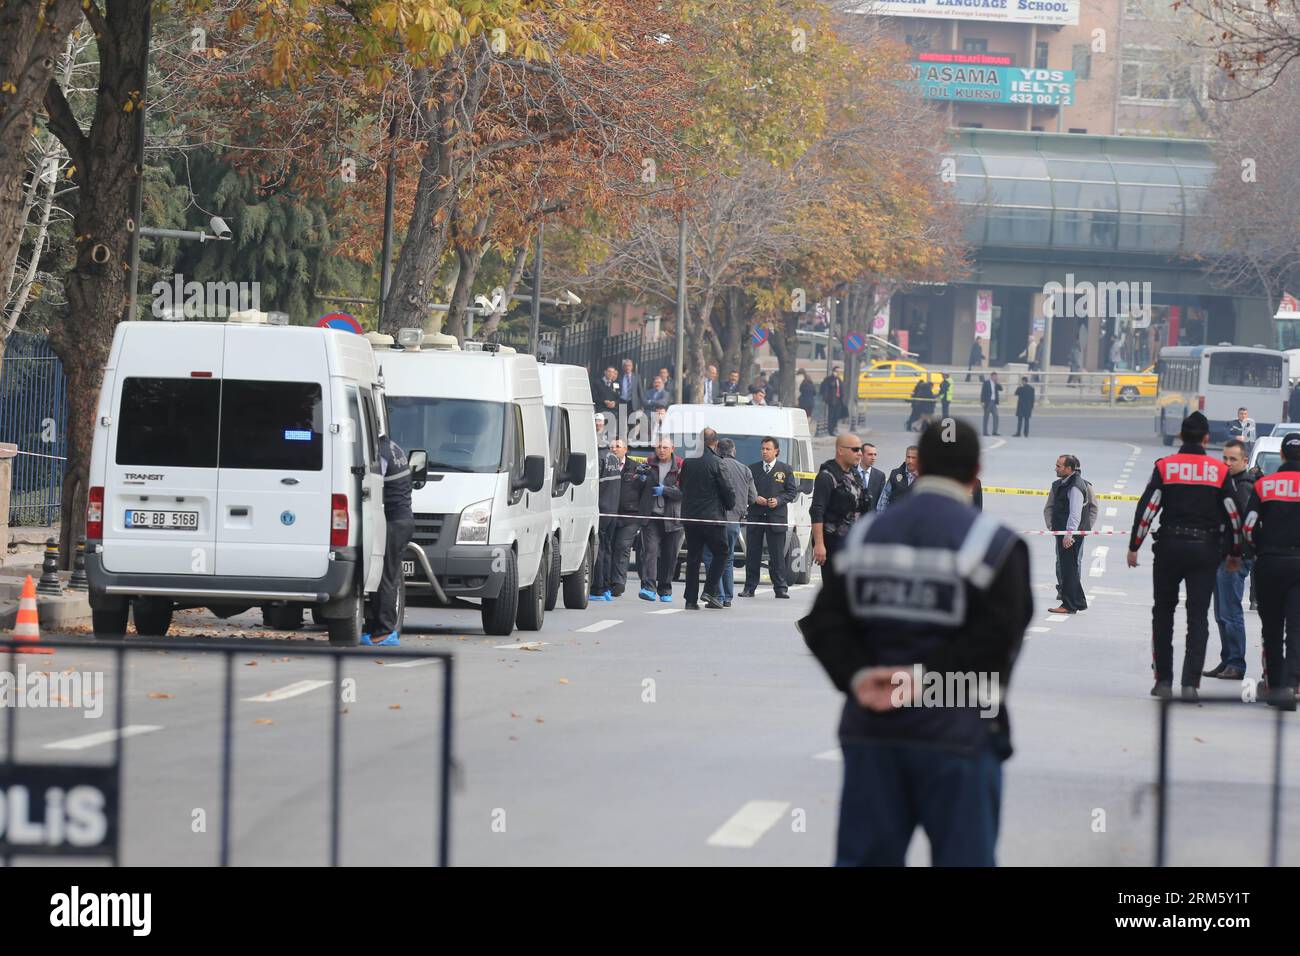 Bildnummer: 60739374 Datum: 21.11.2013 Copyright: imago/Xinhua (131121) -- ANKARA, 21. November 2013 (Xinhua) -- Polizisten sperren die Straßen in der Nähe des Gebäudes des Premierministeriums in Ankara, Türkei, 21. November 2013 ab. Ein Mann, der angeblich ein Gerät trug, das einer Bombe ähnelte, wurde von türkischen Sicherheitskräften auf der Vekaletler Avenue gefangen genommen, nachdem er am Donnerstag versucht hatte, das Gebäude des türkischen Premierministeriums in Ankara zu betreten. (Xinhua/Mustafa Kaya) (srb) TÜRKEI-ANKARA-SELBSTMORDANSCHLAG PUBLICATIONxNOTxINxCHN Gesellschaft x2x xkg 2013 quer premiumd o0 Ministerium Absperrung Straßensperre Straße Verkehr Sper Stockfoto